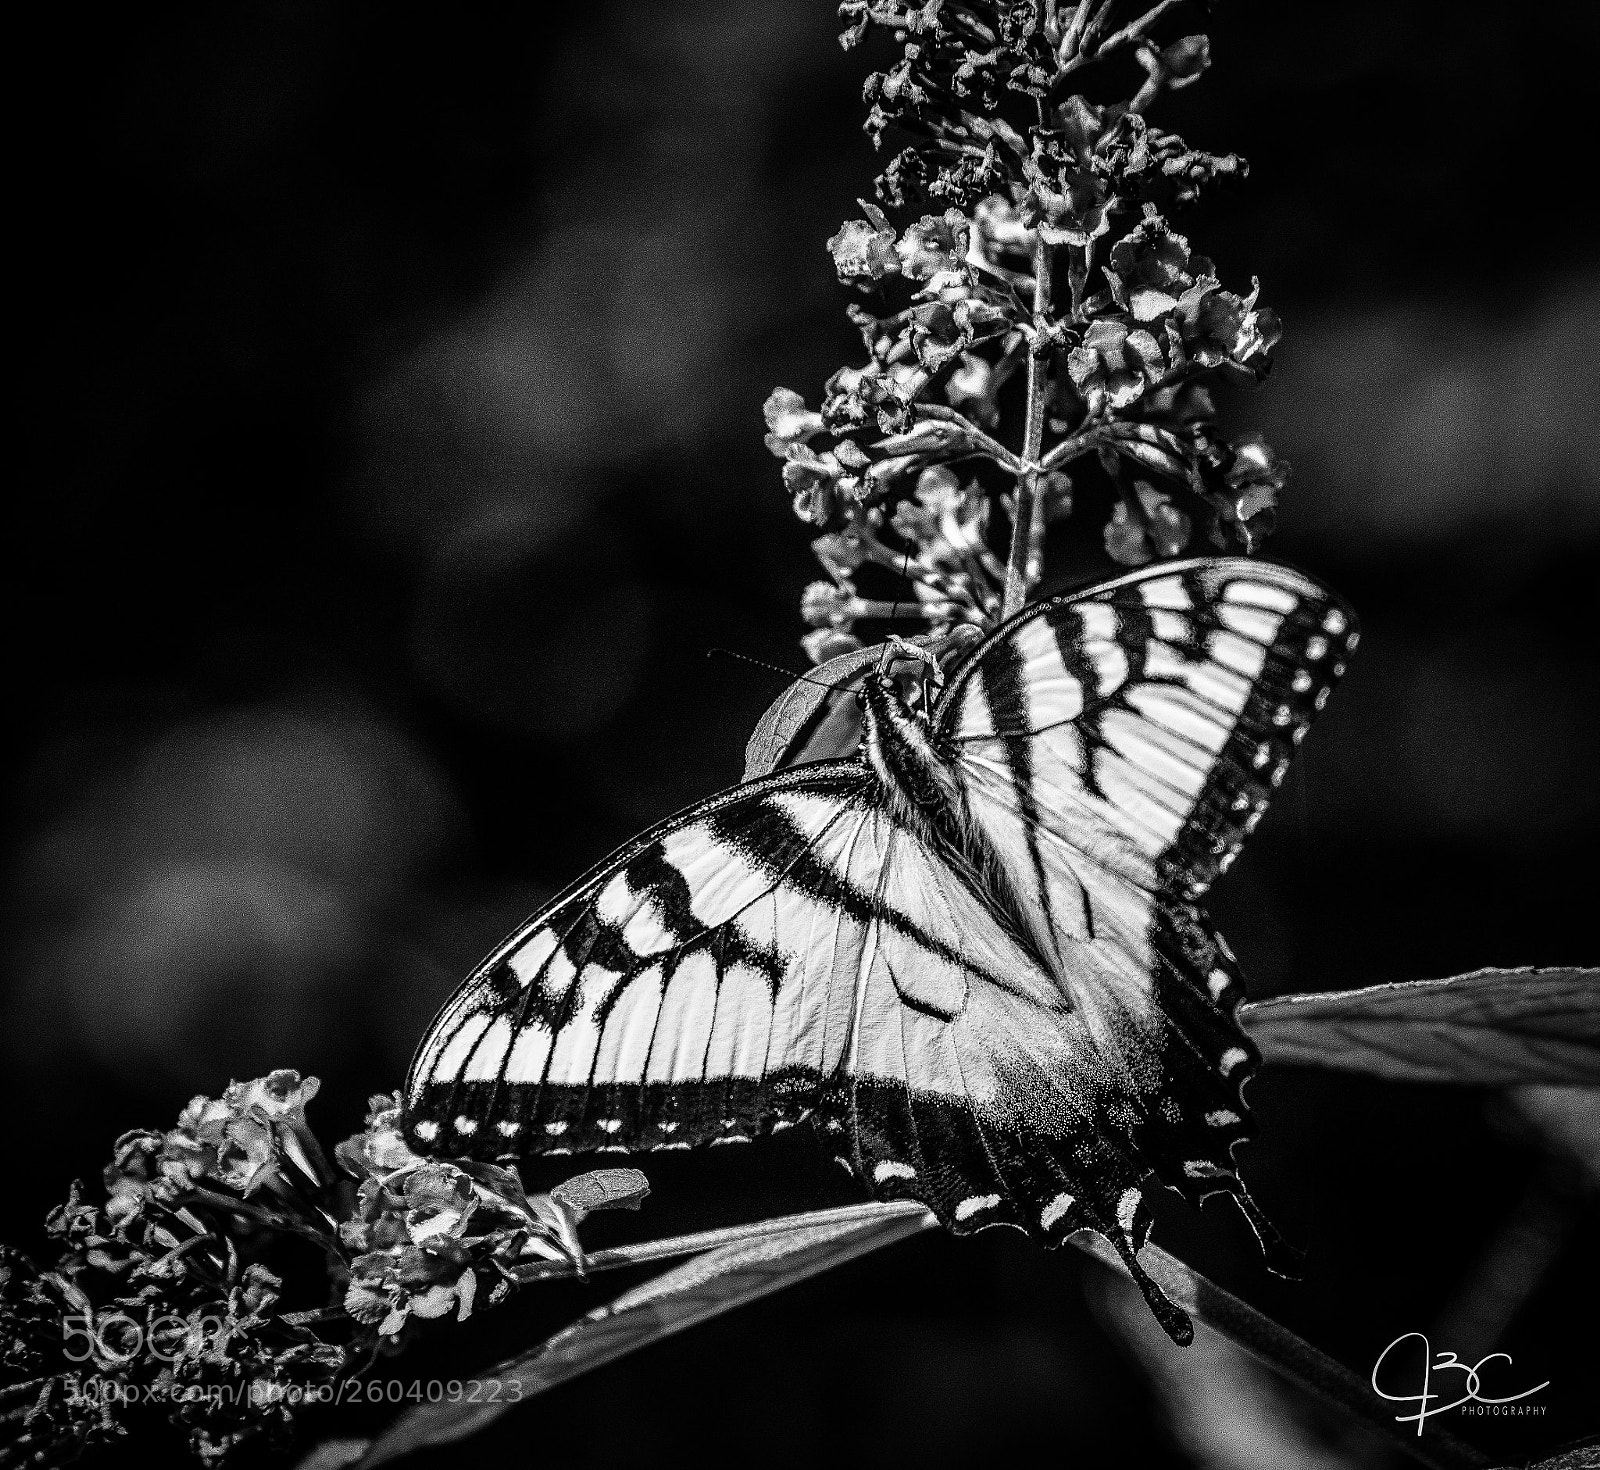 Nikon D800 sample photo. B&w zebra swallowtail photography